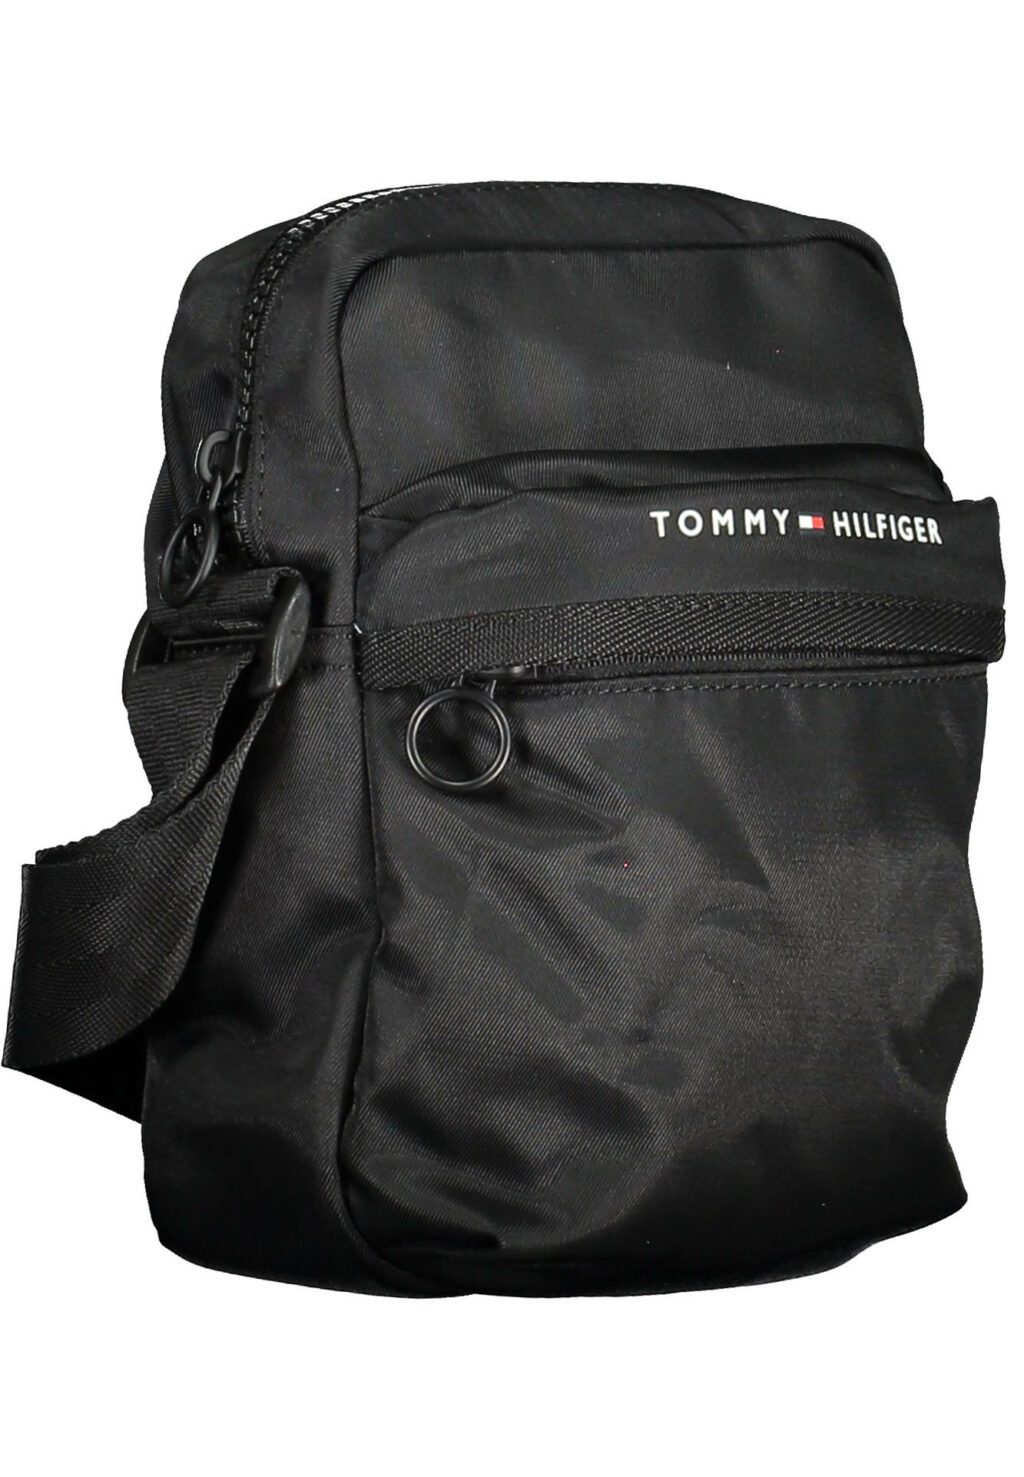 TOMMY HILFIGER MAN BLACK SHOULDER BAG AM0AM10914_NERO_BDS